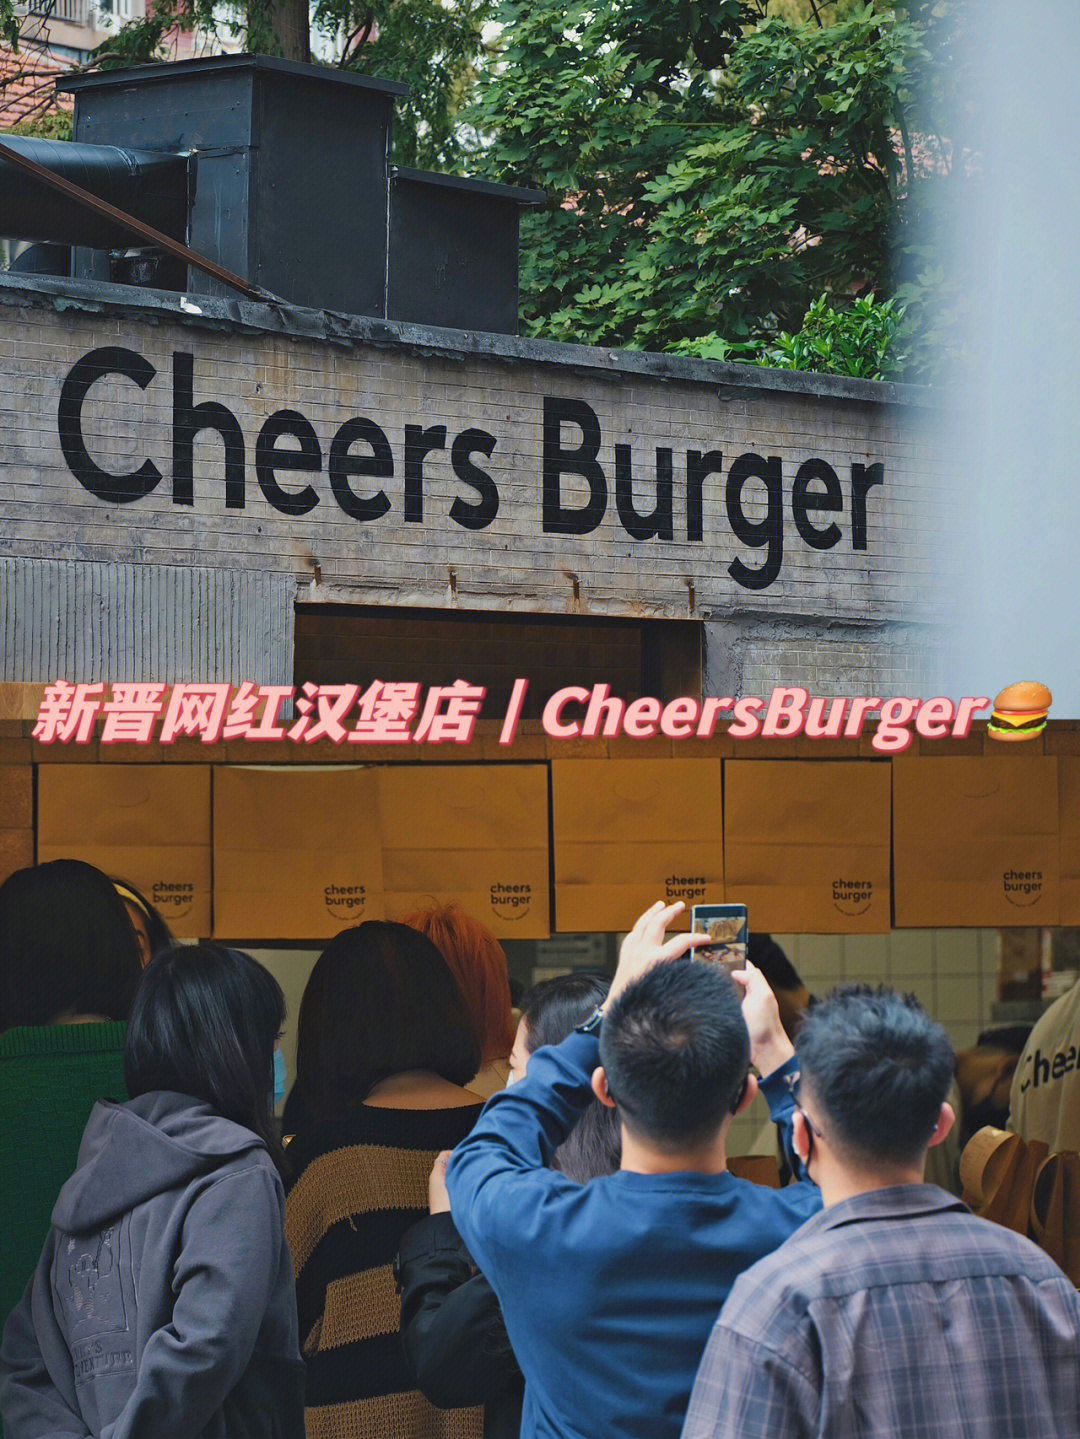 上海探店火爆汉堡店cheersburger